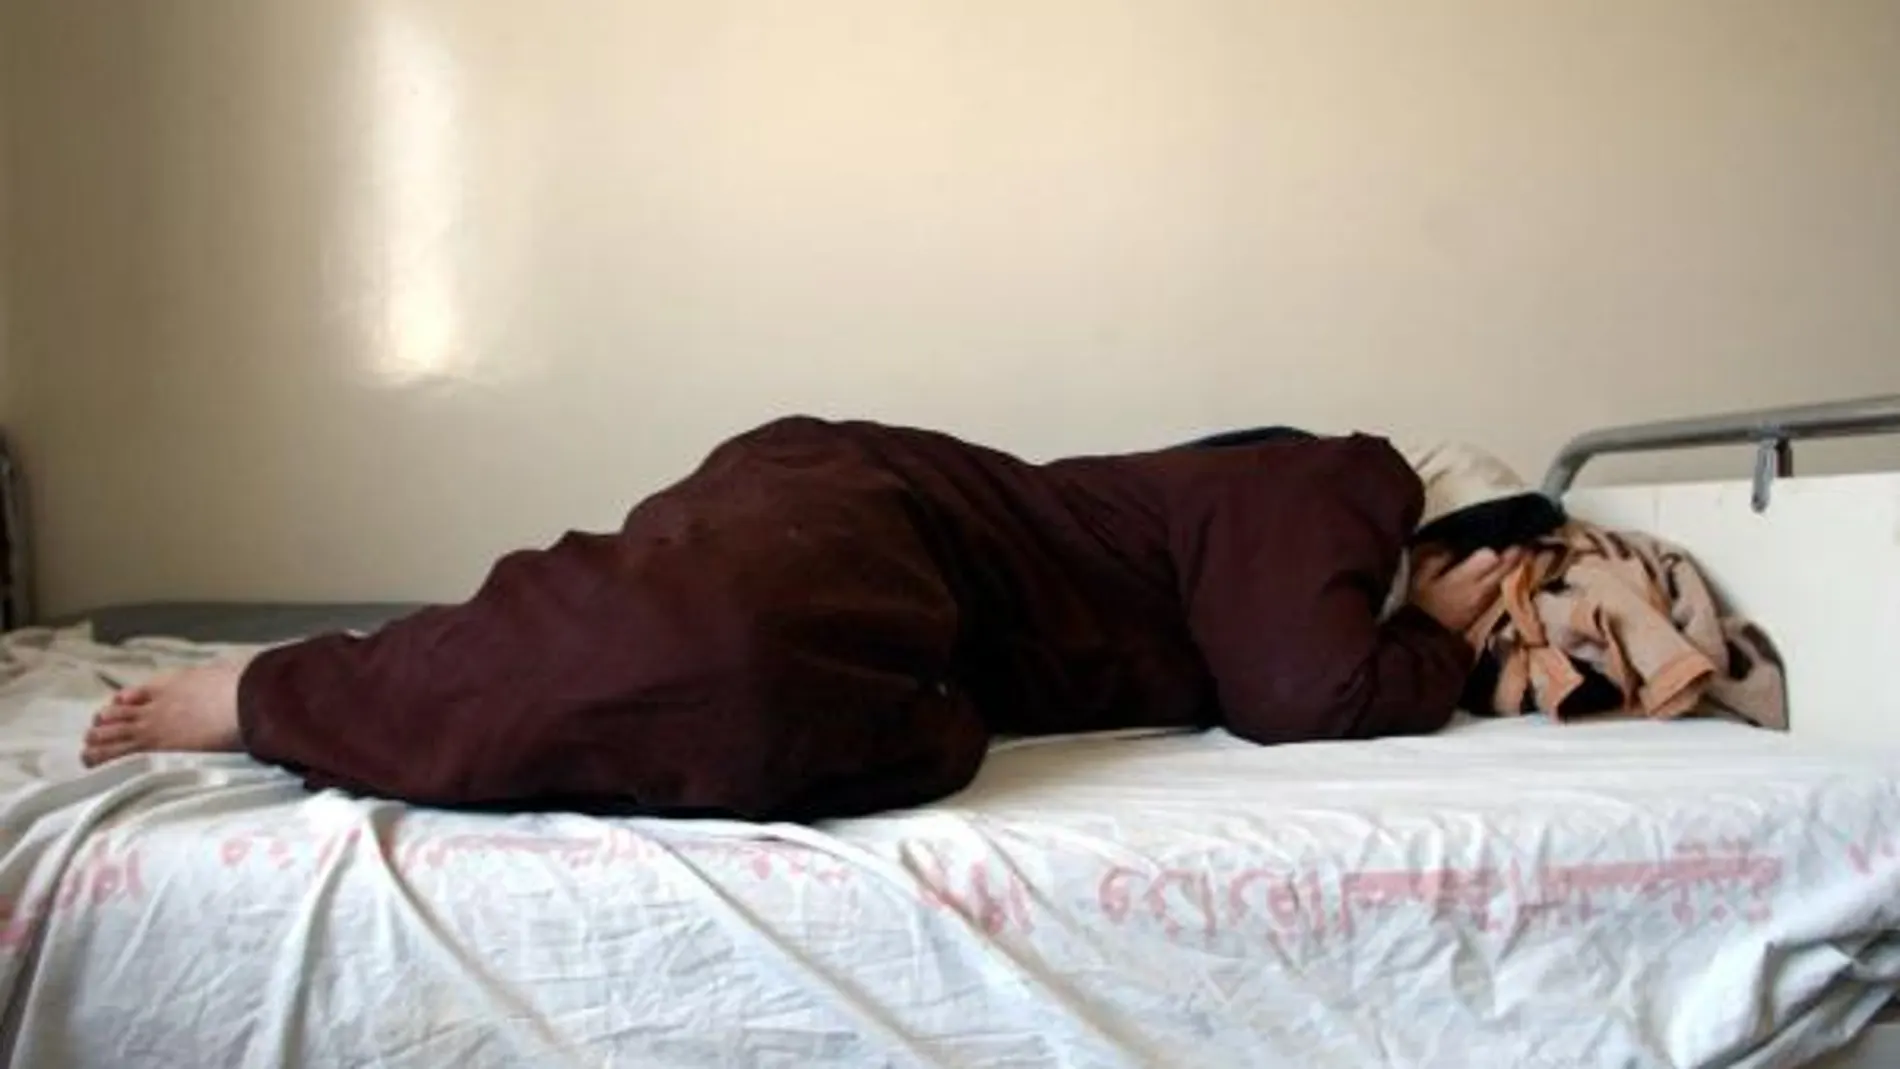 Una mujer deprimida tumbada en la cama. Fuente: AP